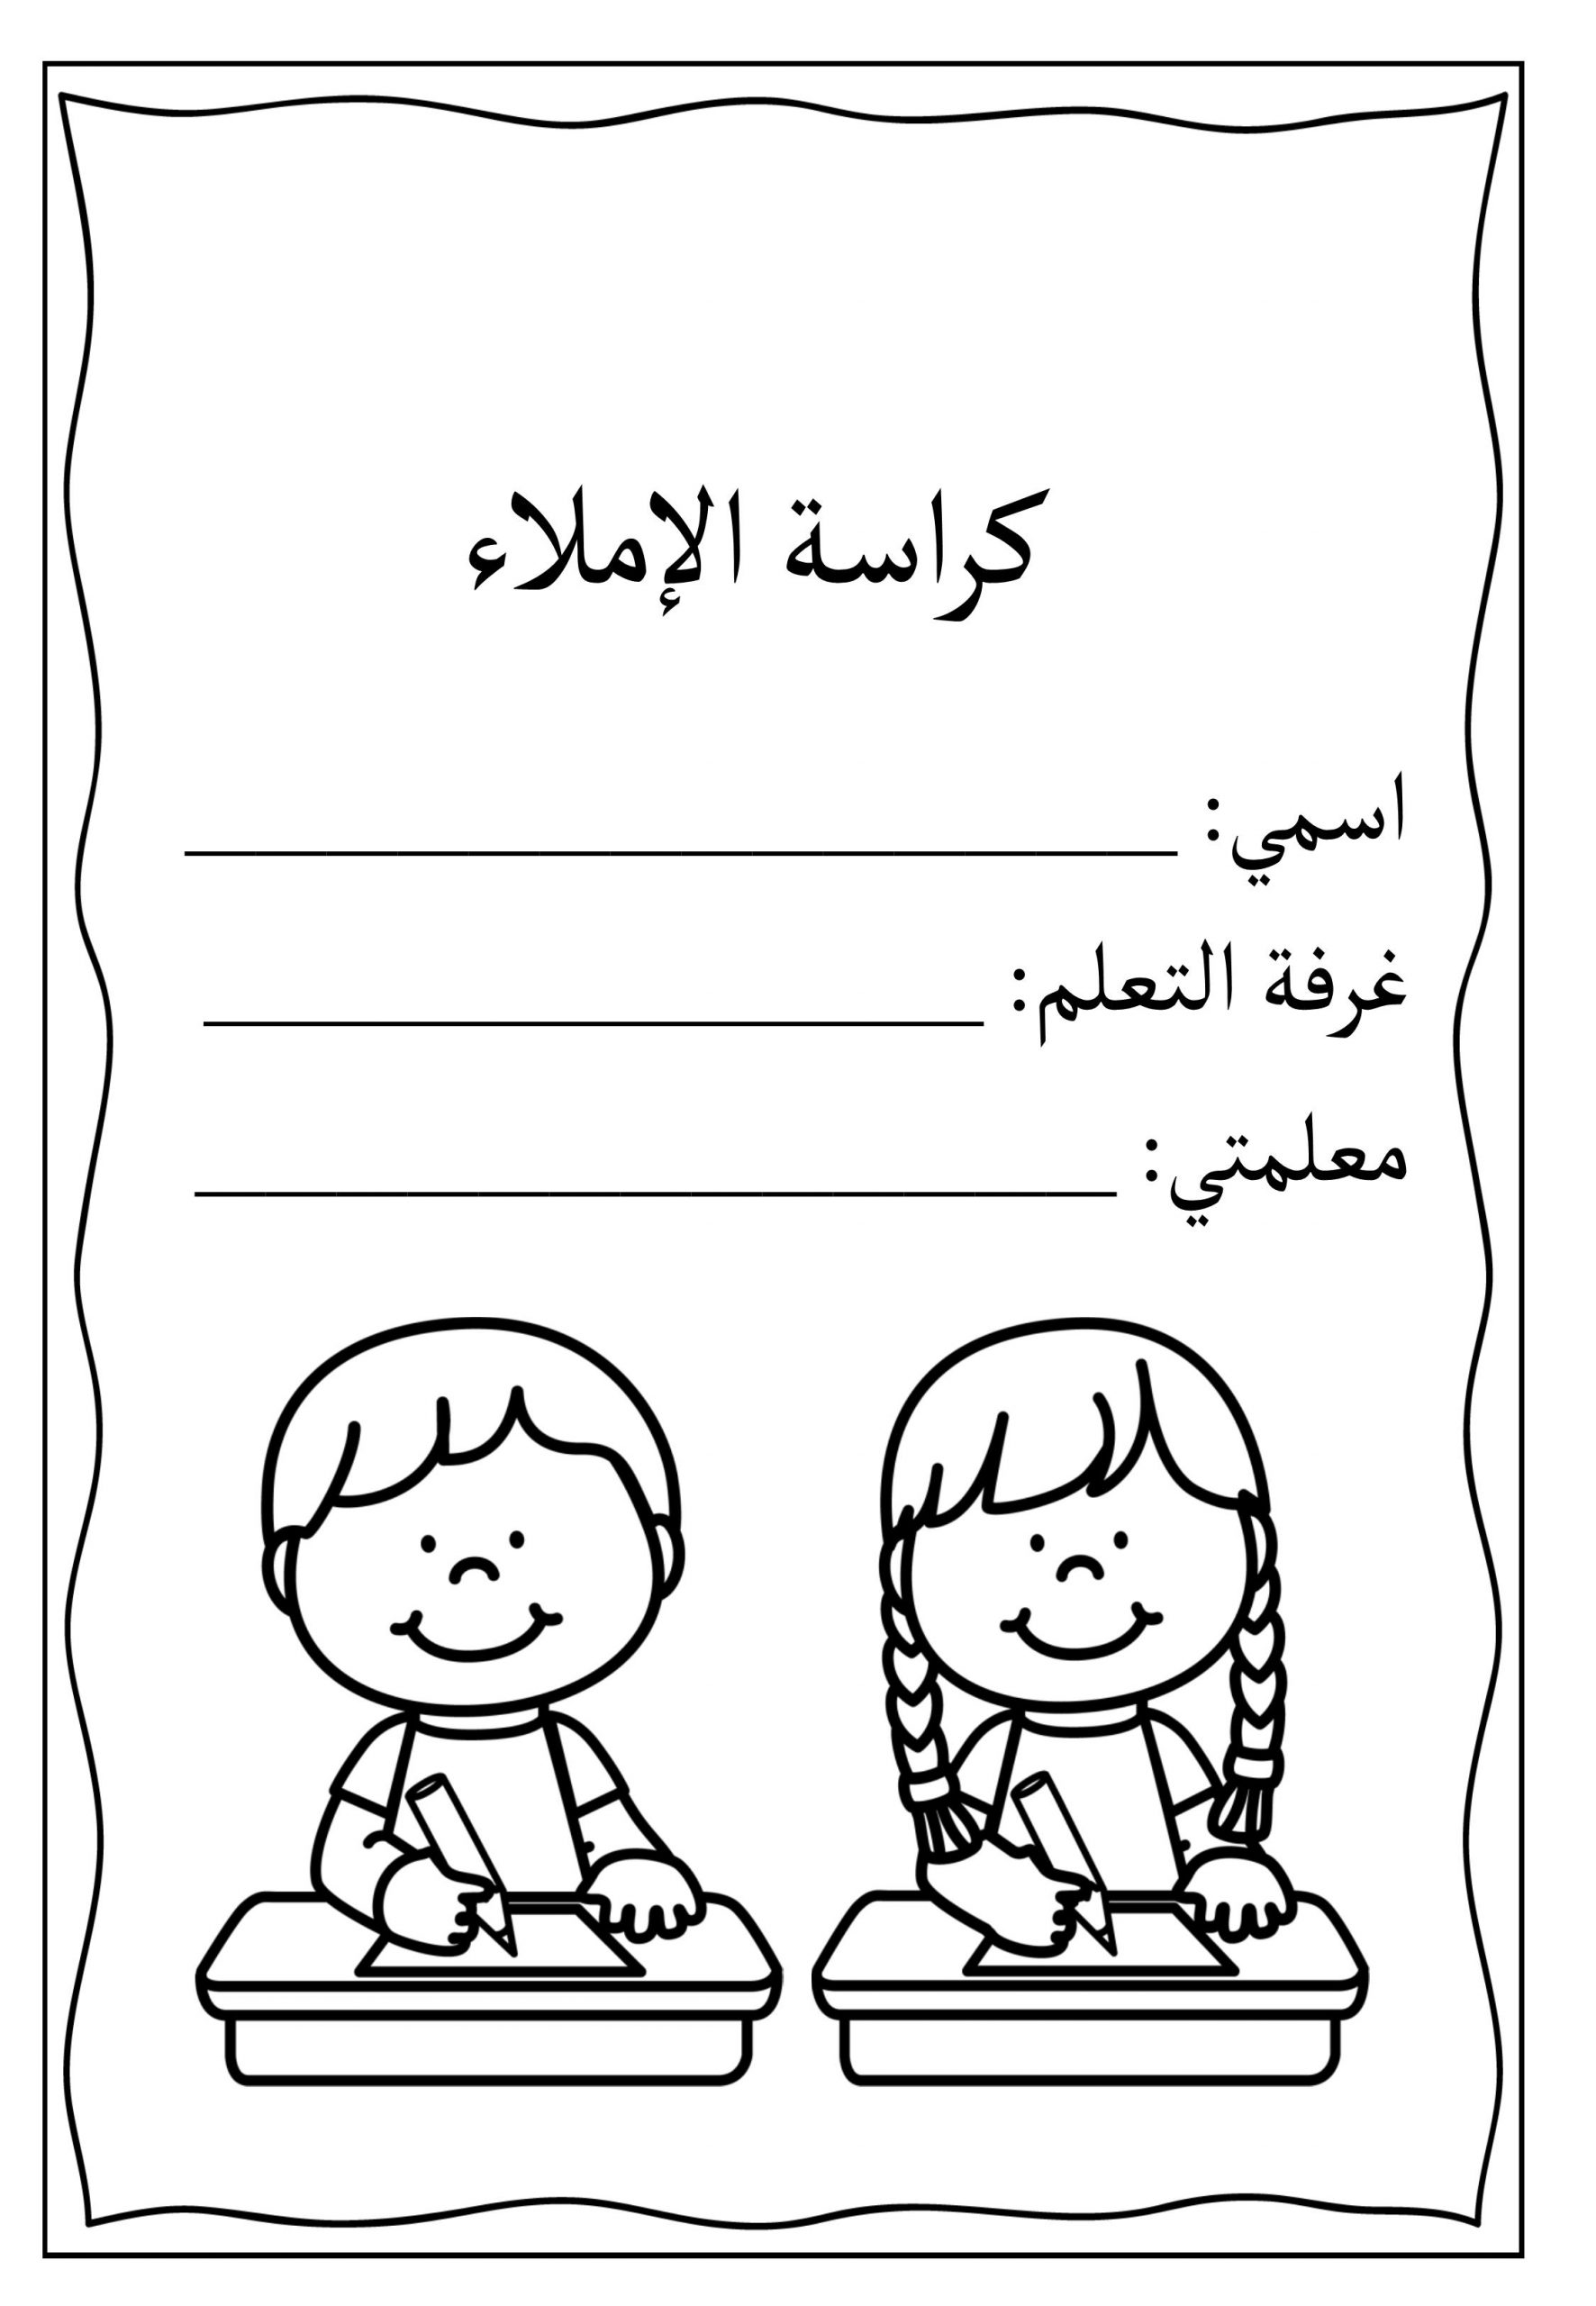 كراسة الاملاء جميلة ومتنوعة لطلاب الصف الاول مادة اللغة العربية